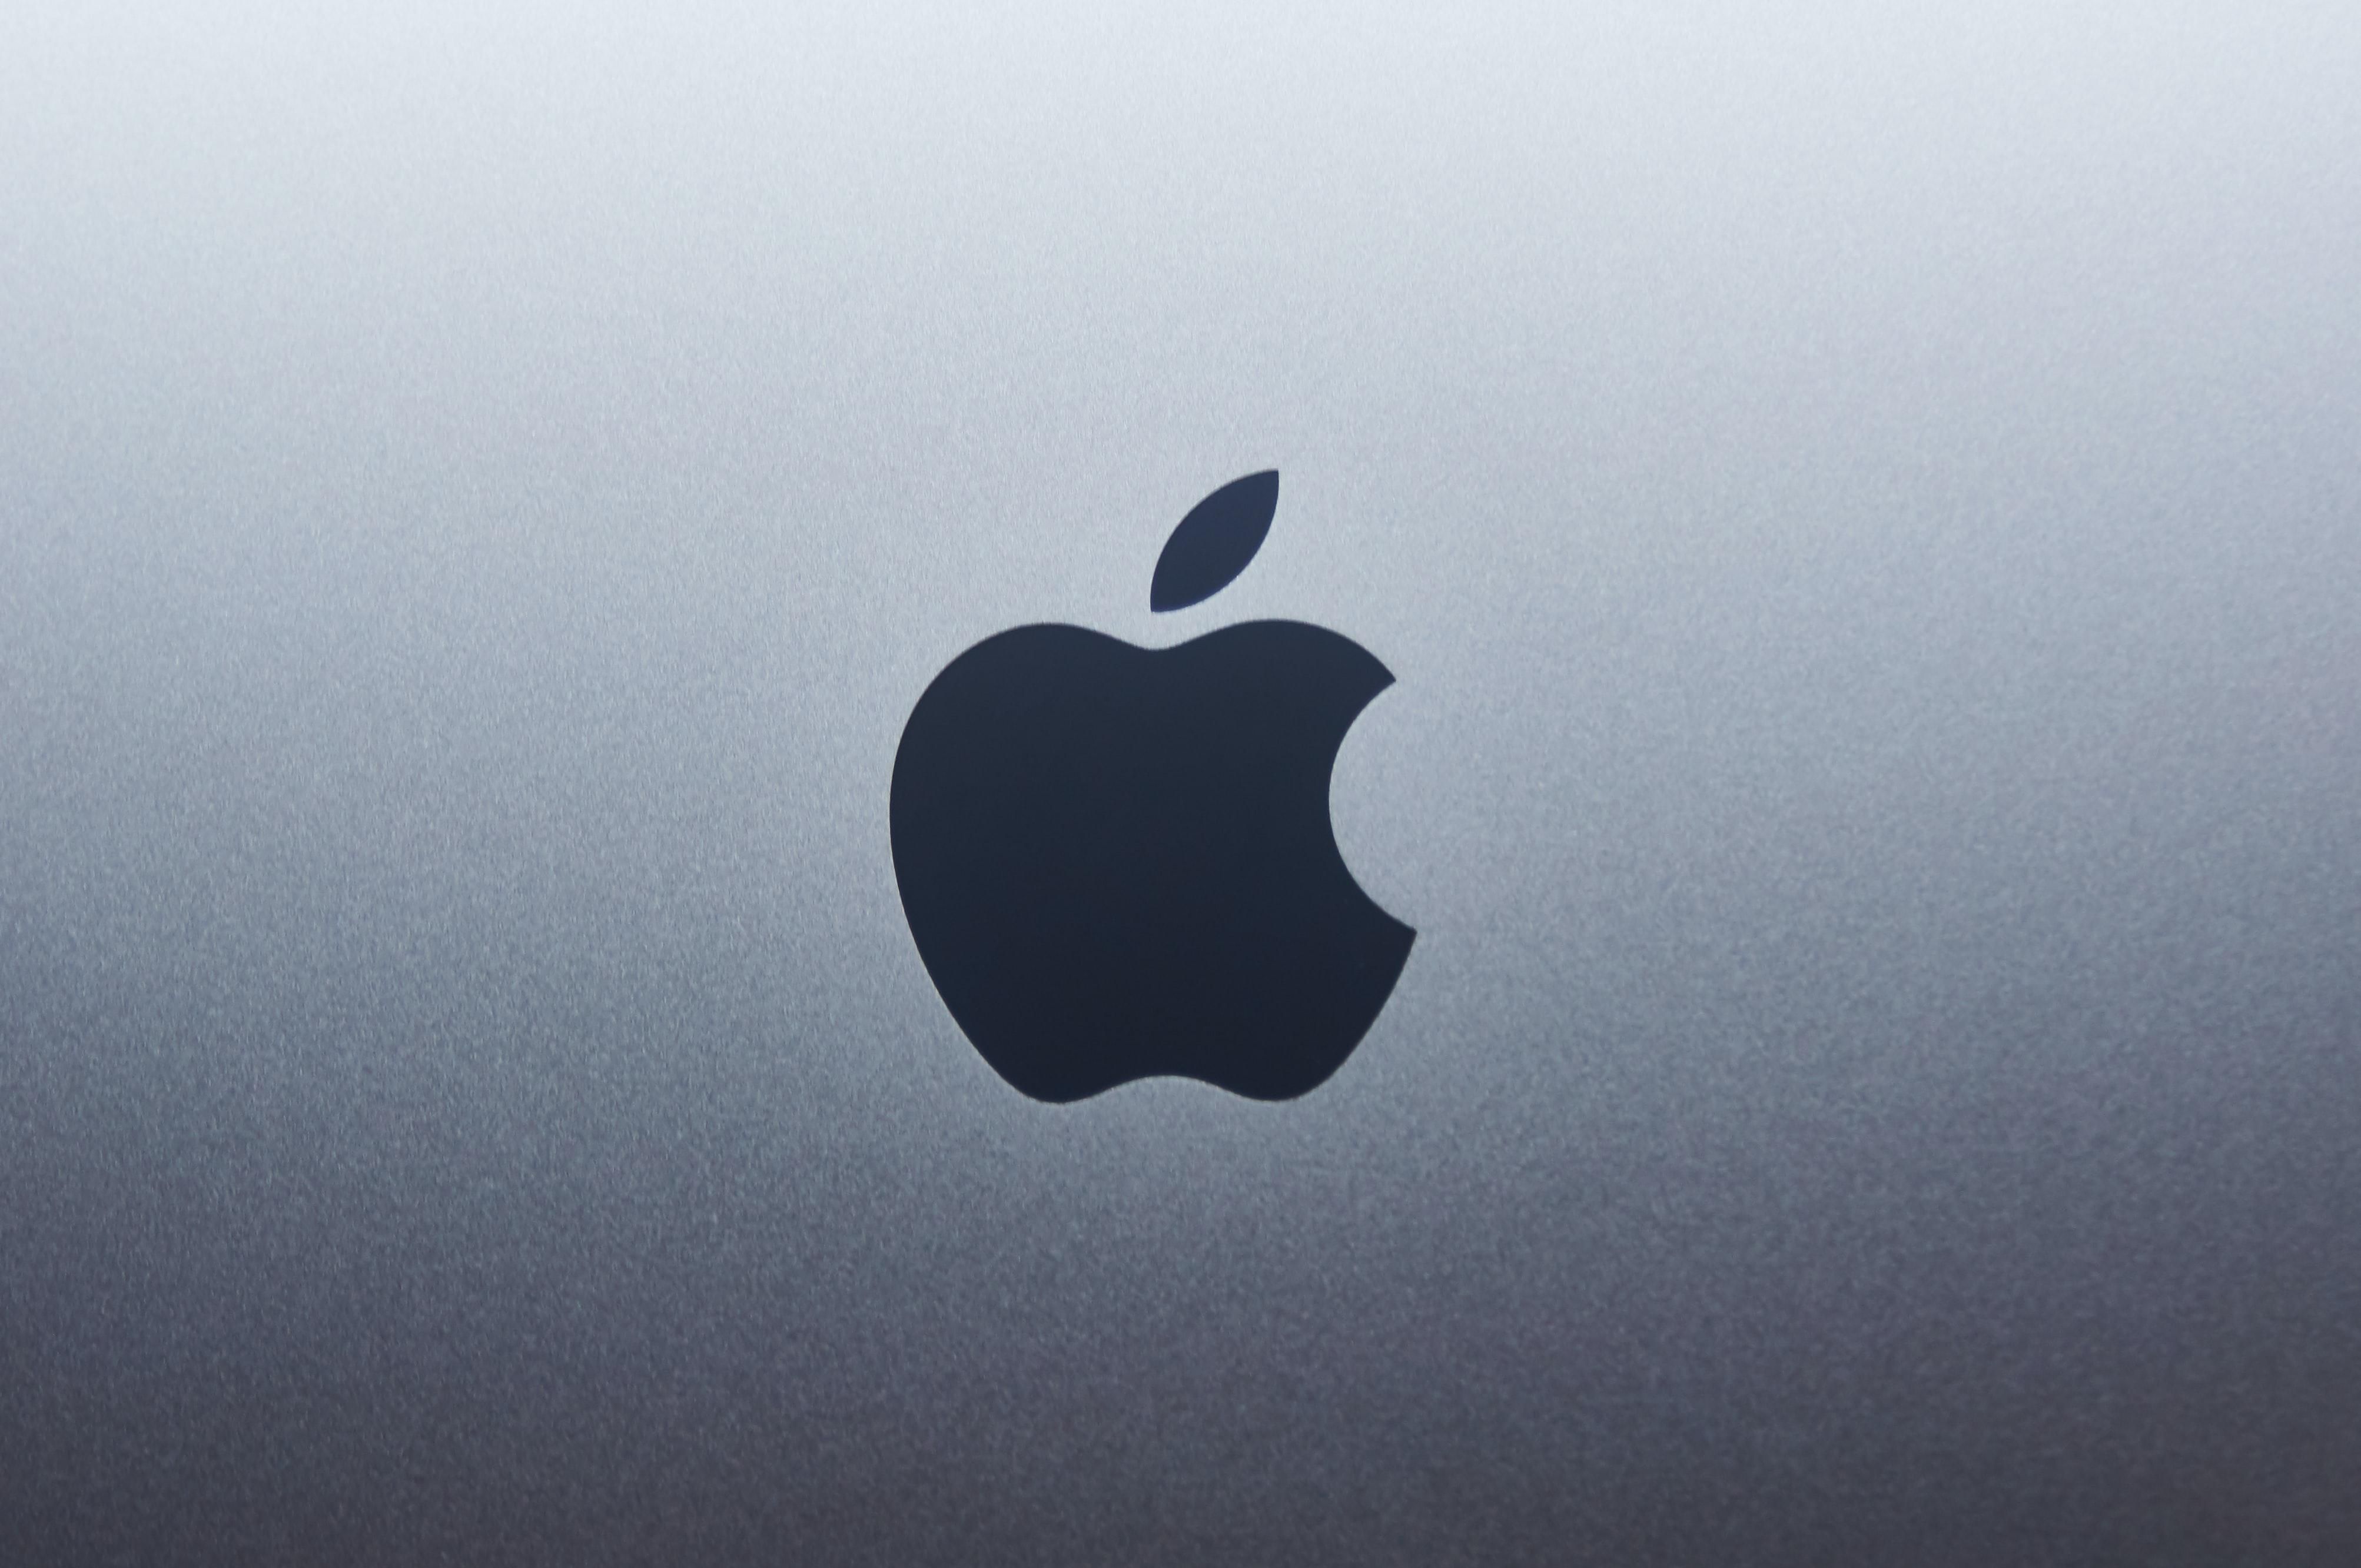 Az átvert Apple logója egy telefon hátulján